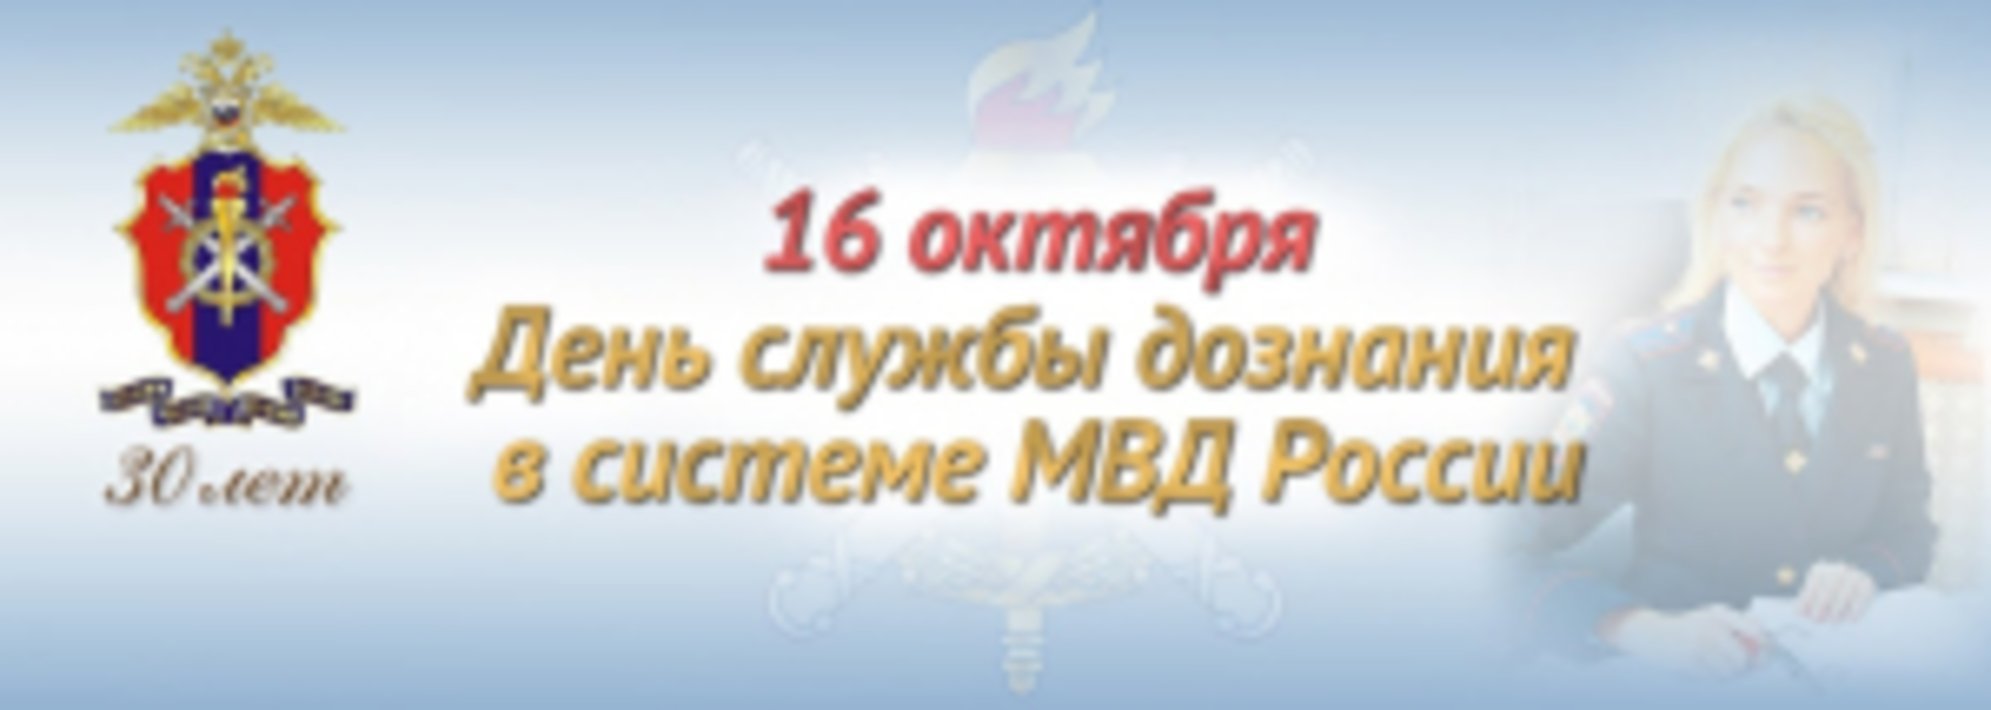 16 Октября день службы дознания МВД РФ